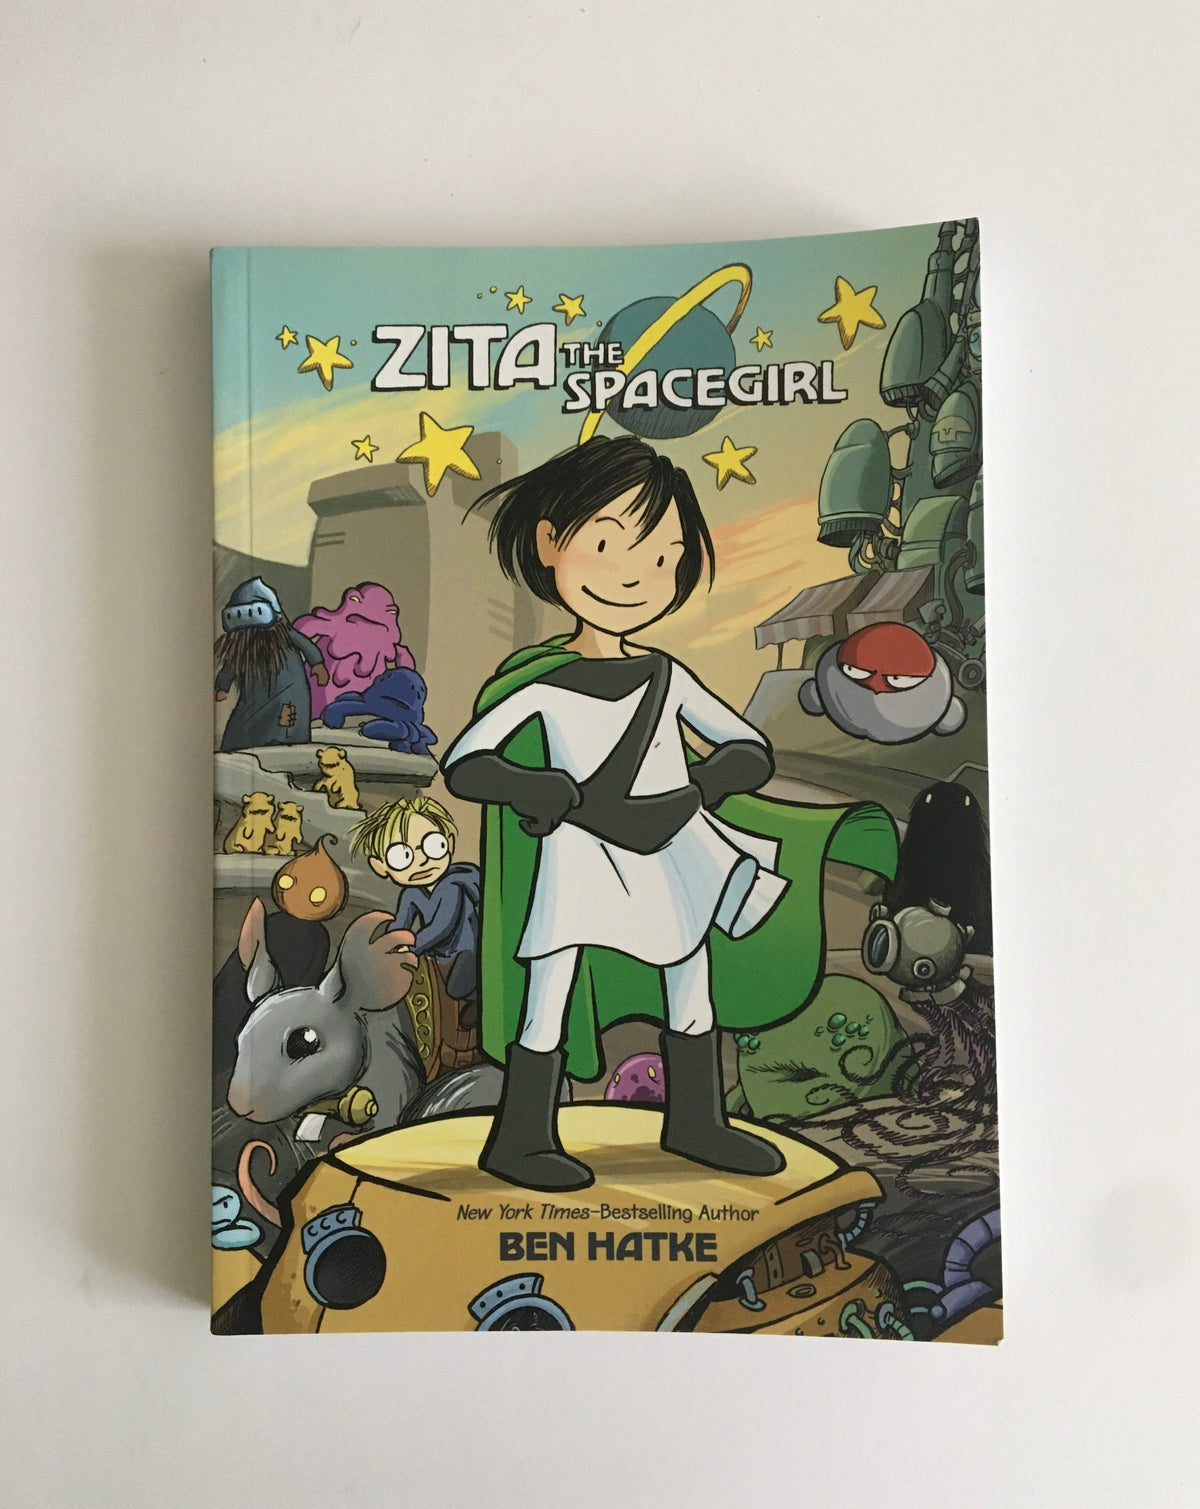 Zita the Spacegirl by Ben Hatke